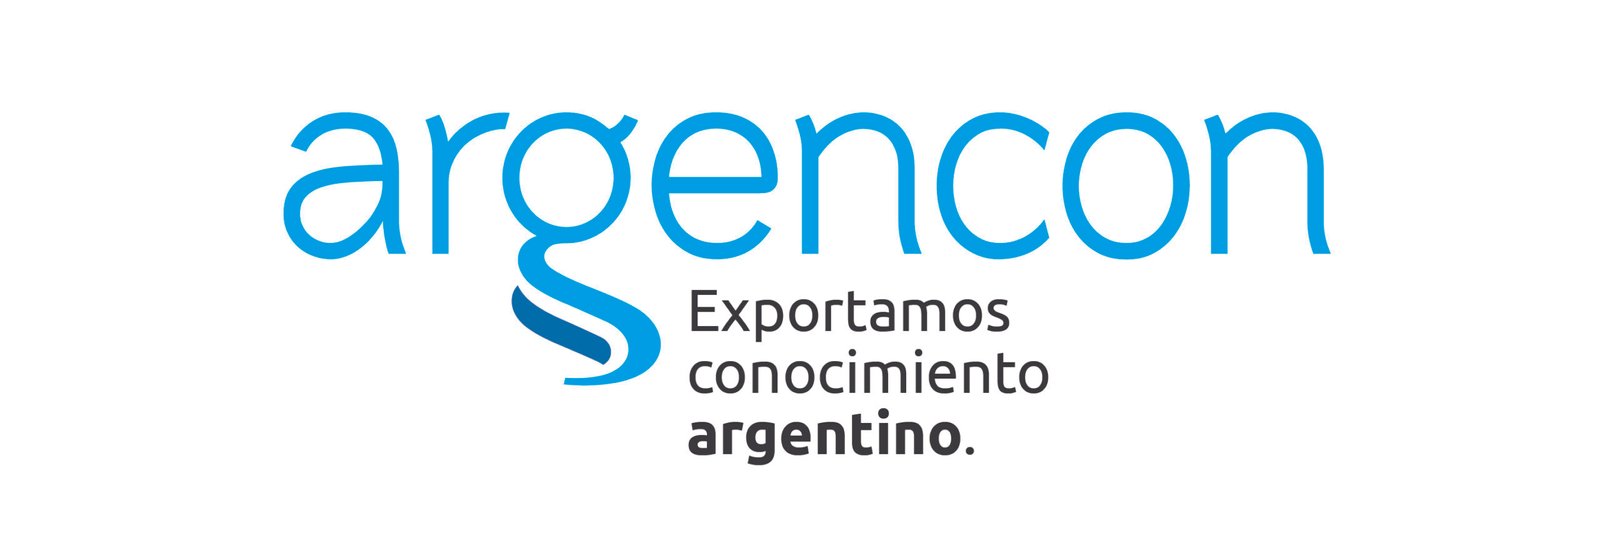 Argencon_logotipo-sl